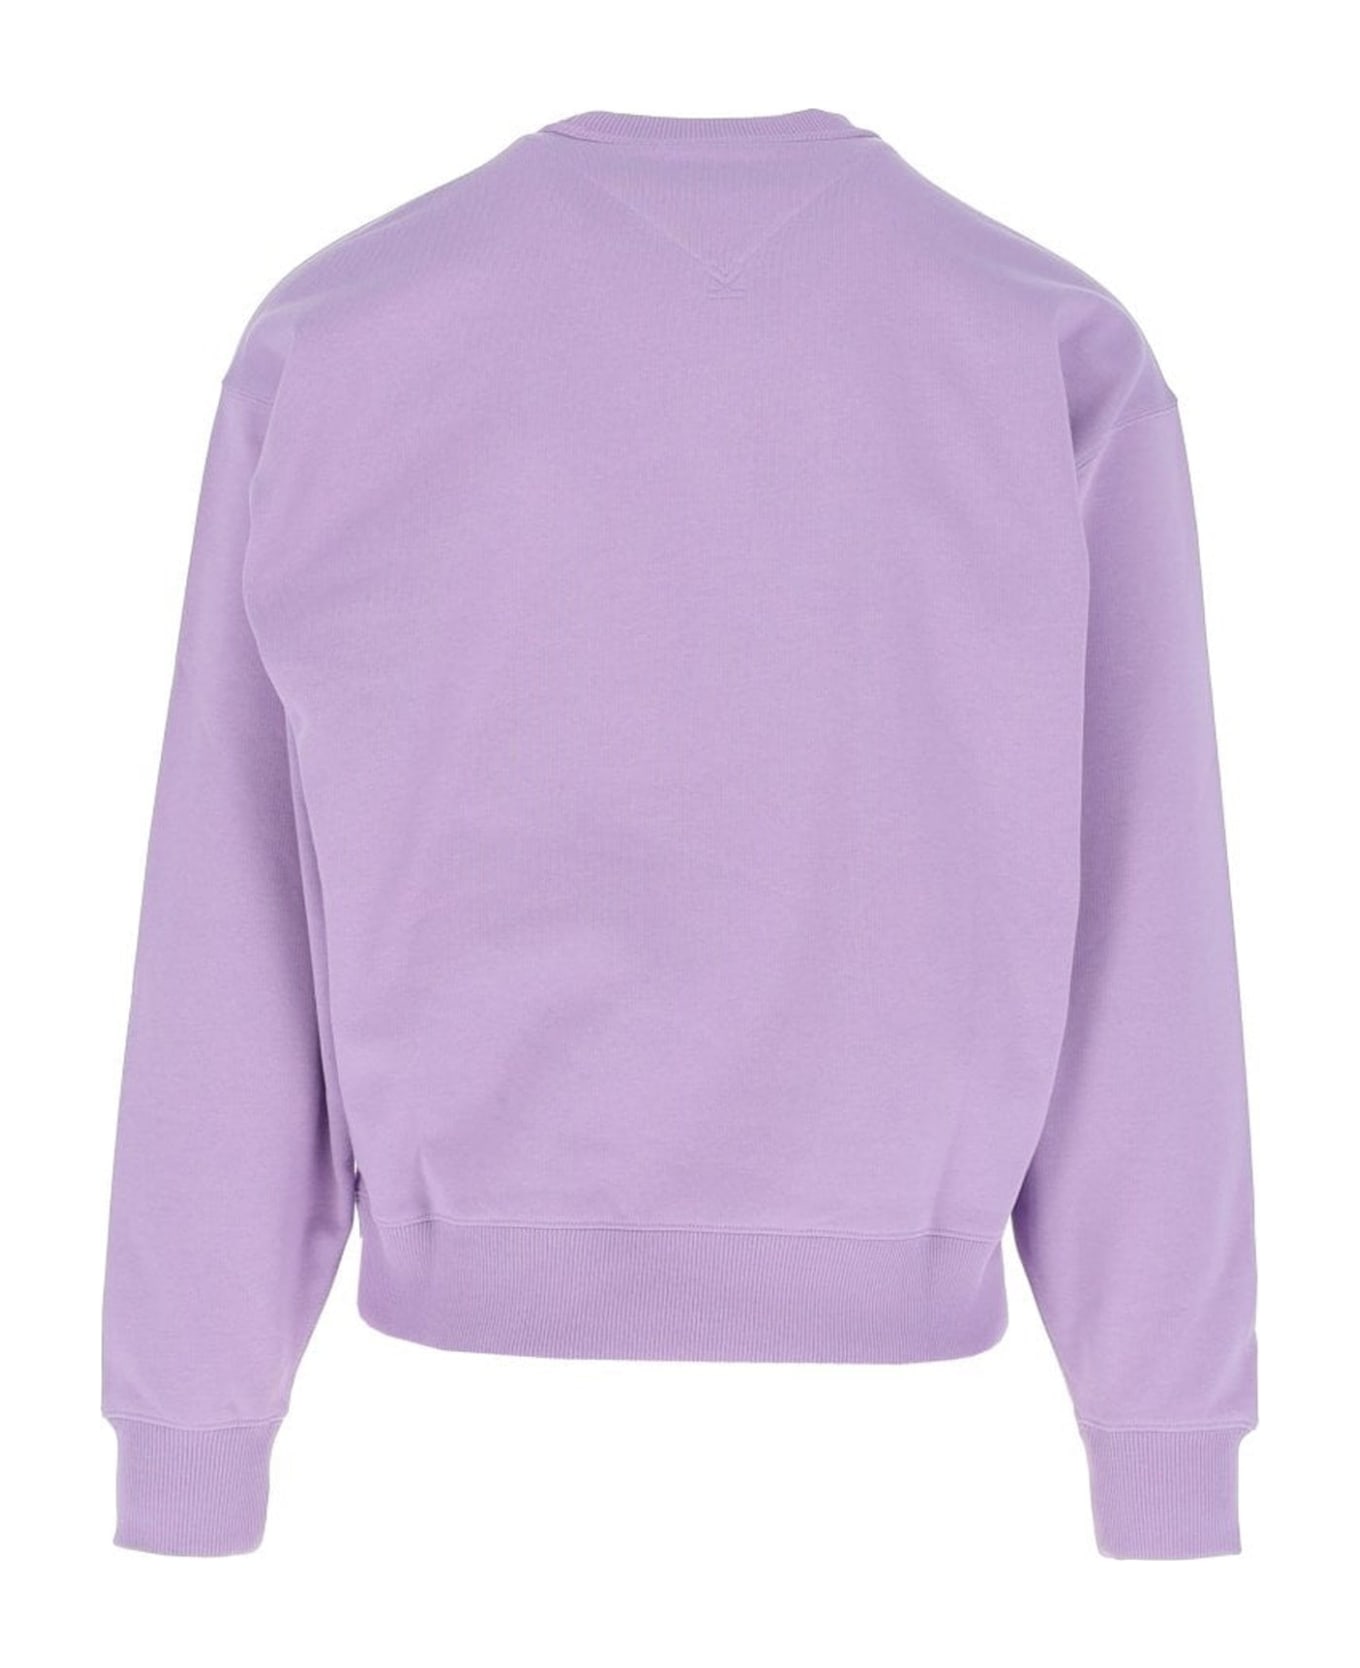 Kenzo Graphic Oversize Sweatshirt - Lilac フリース